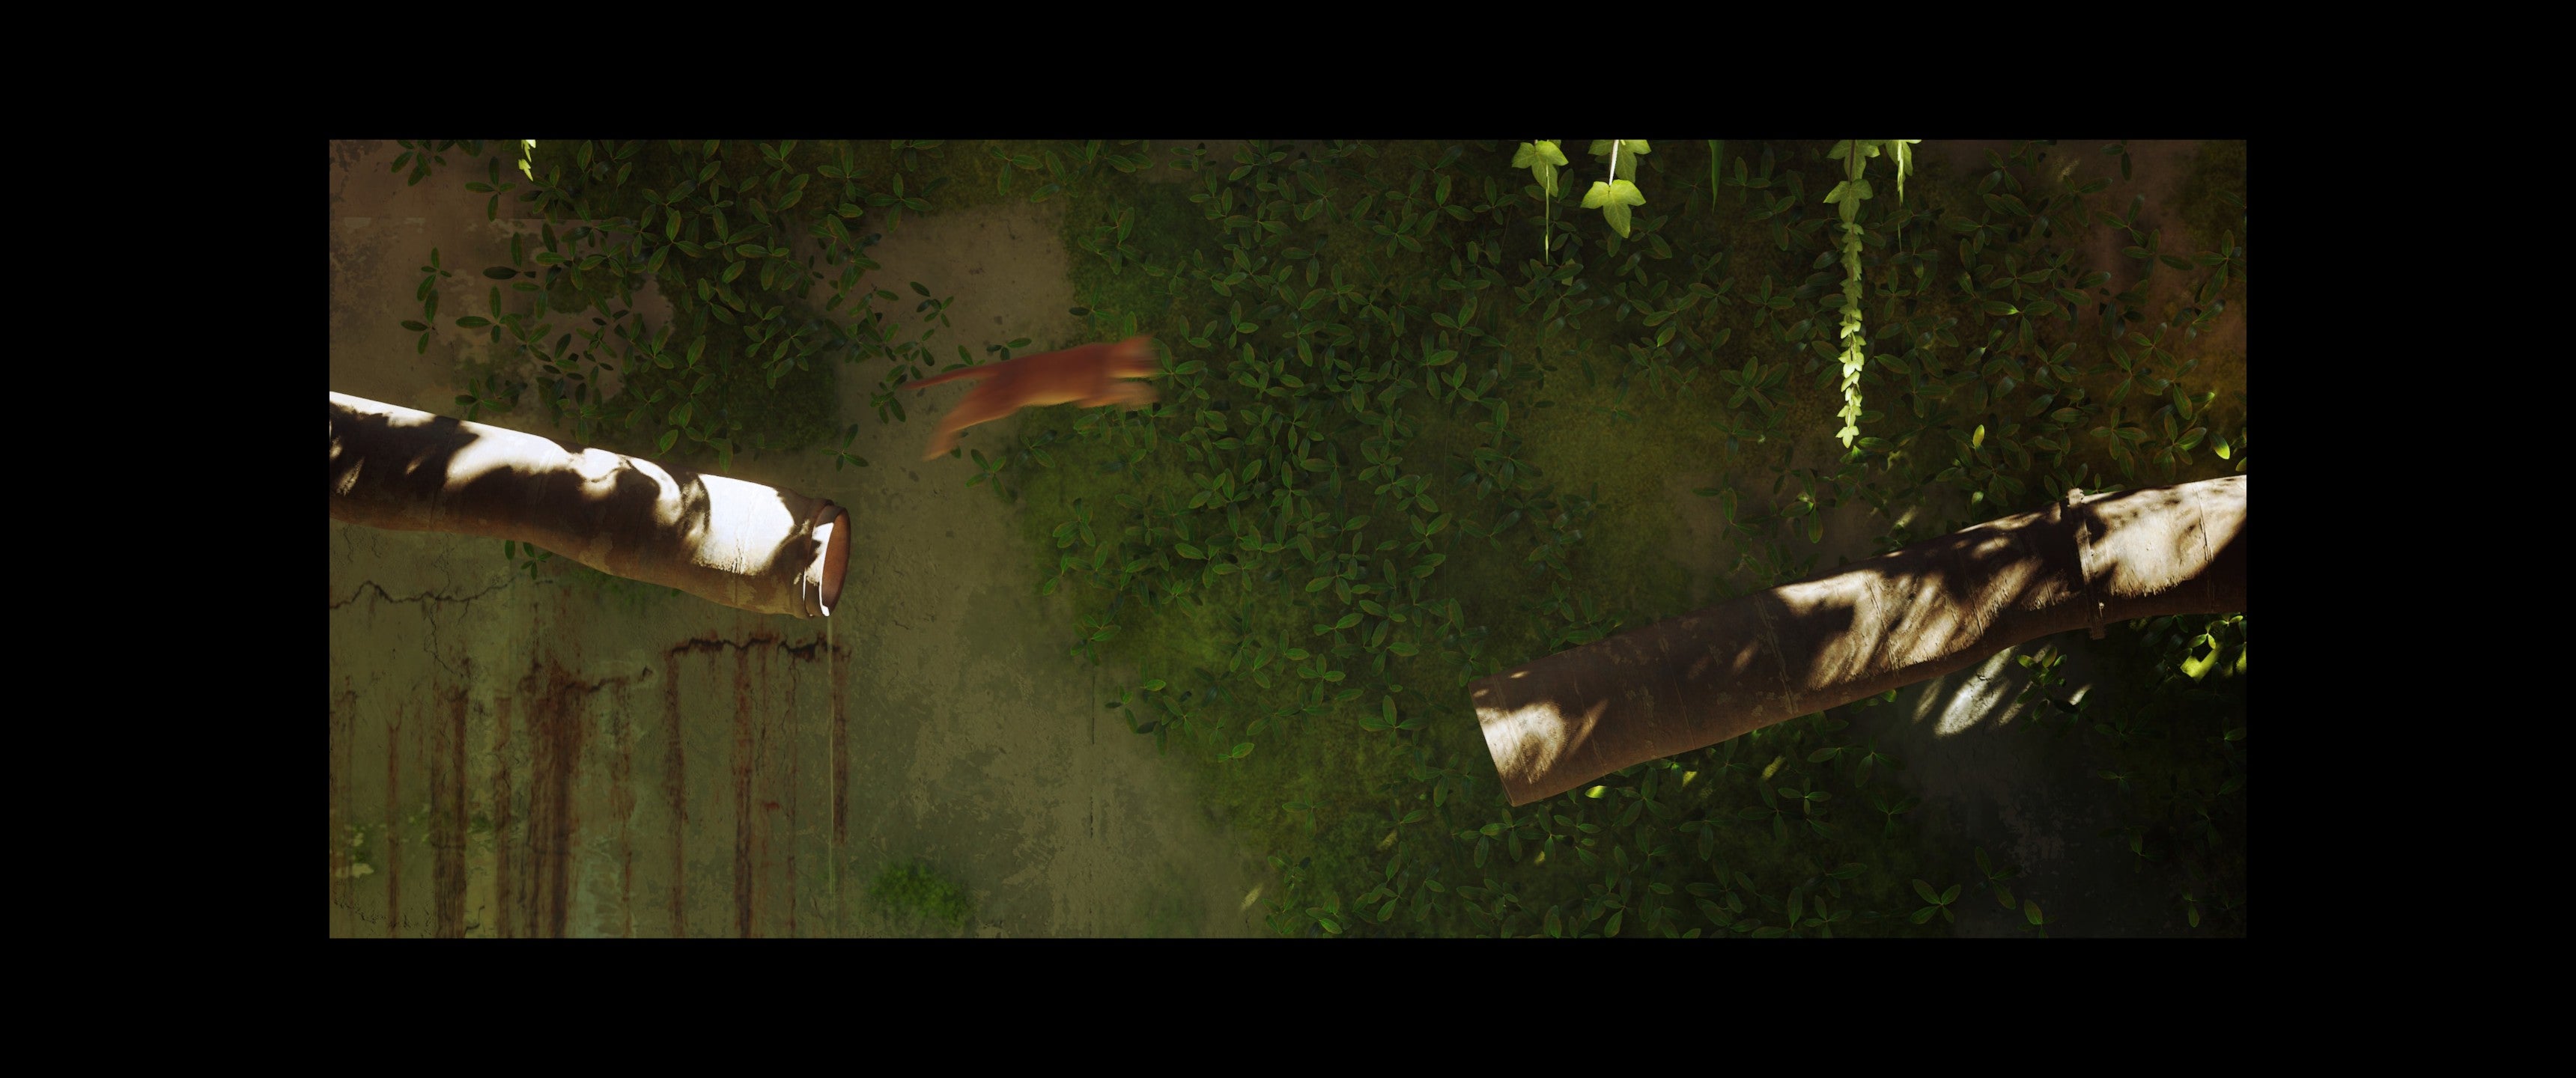 Кошка прыгает между трубами в Stray, показывая черную рамку, которая появляется во время некоторых роликов в сверхшироком режиме.